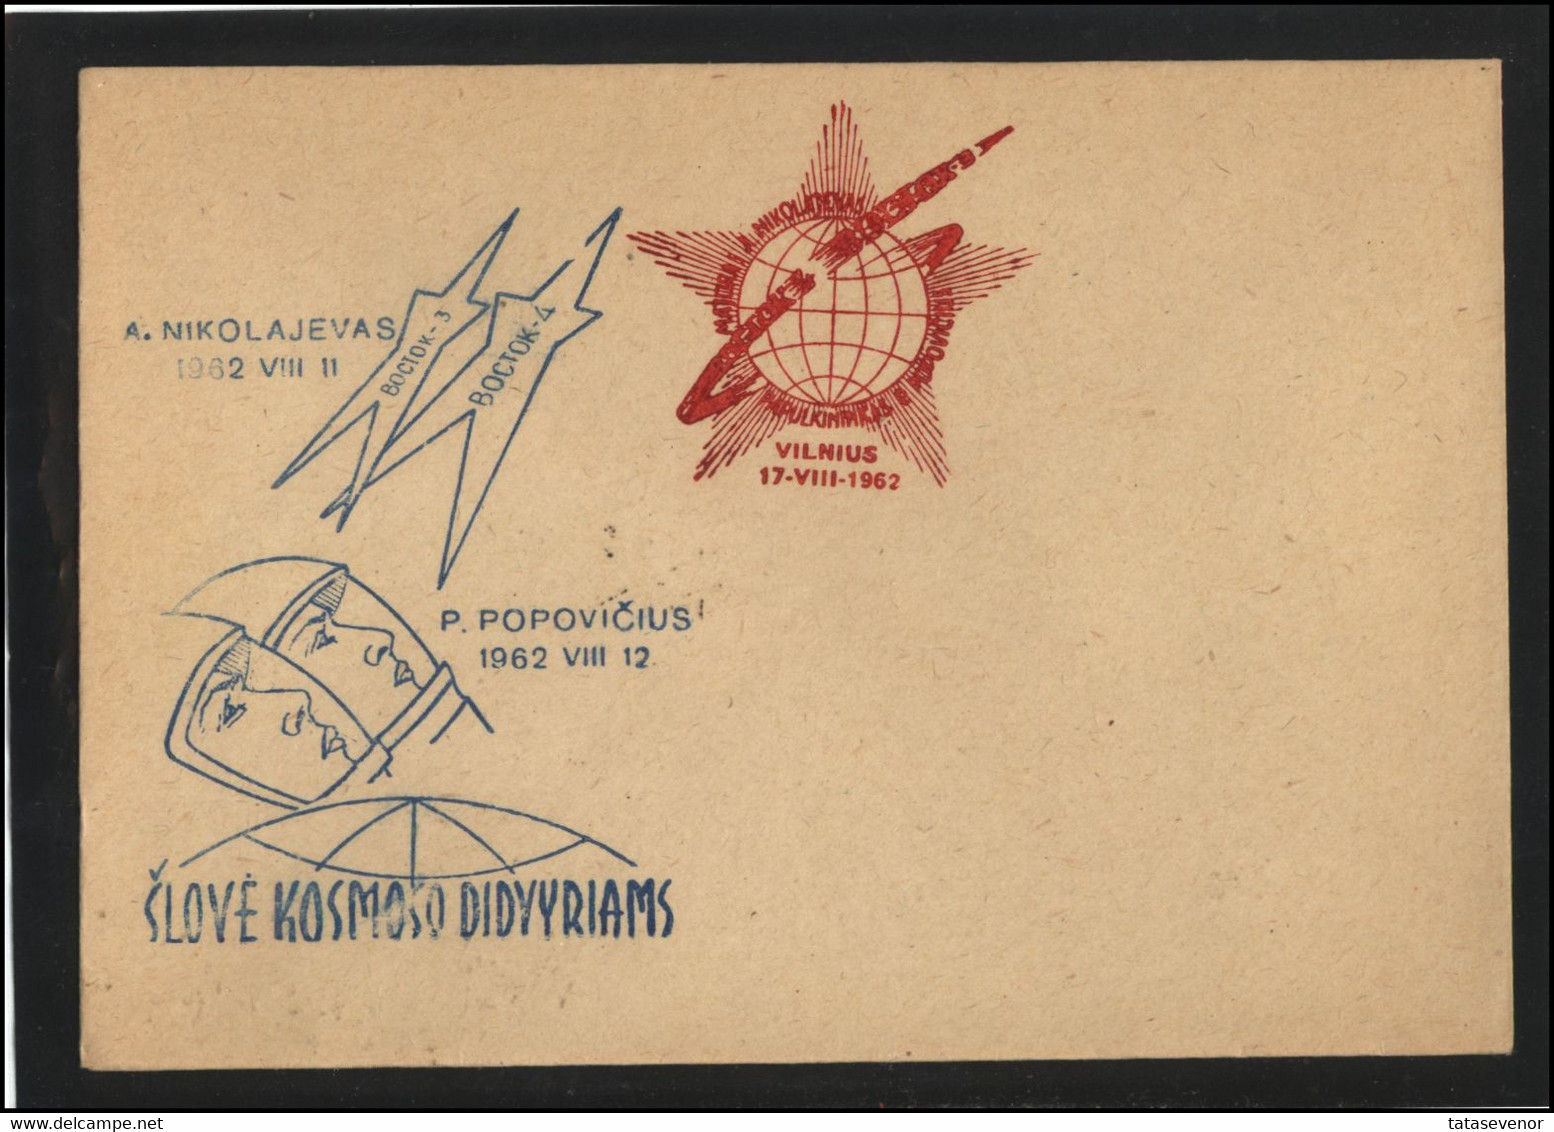 RUSSIA USSR Private Envelope LITHUANIA VILNIUS VNO-klub-052-1 Space Exploration Vostok-3 Vostok-4 Anniversary - Locali & Privati